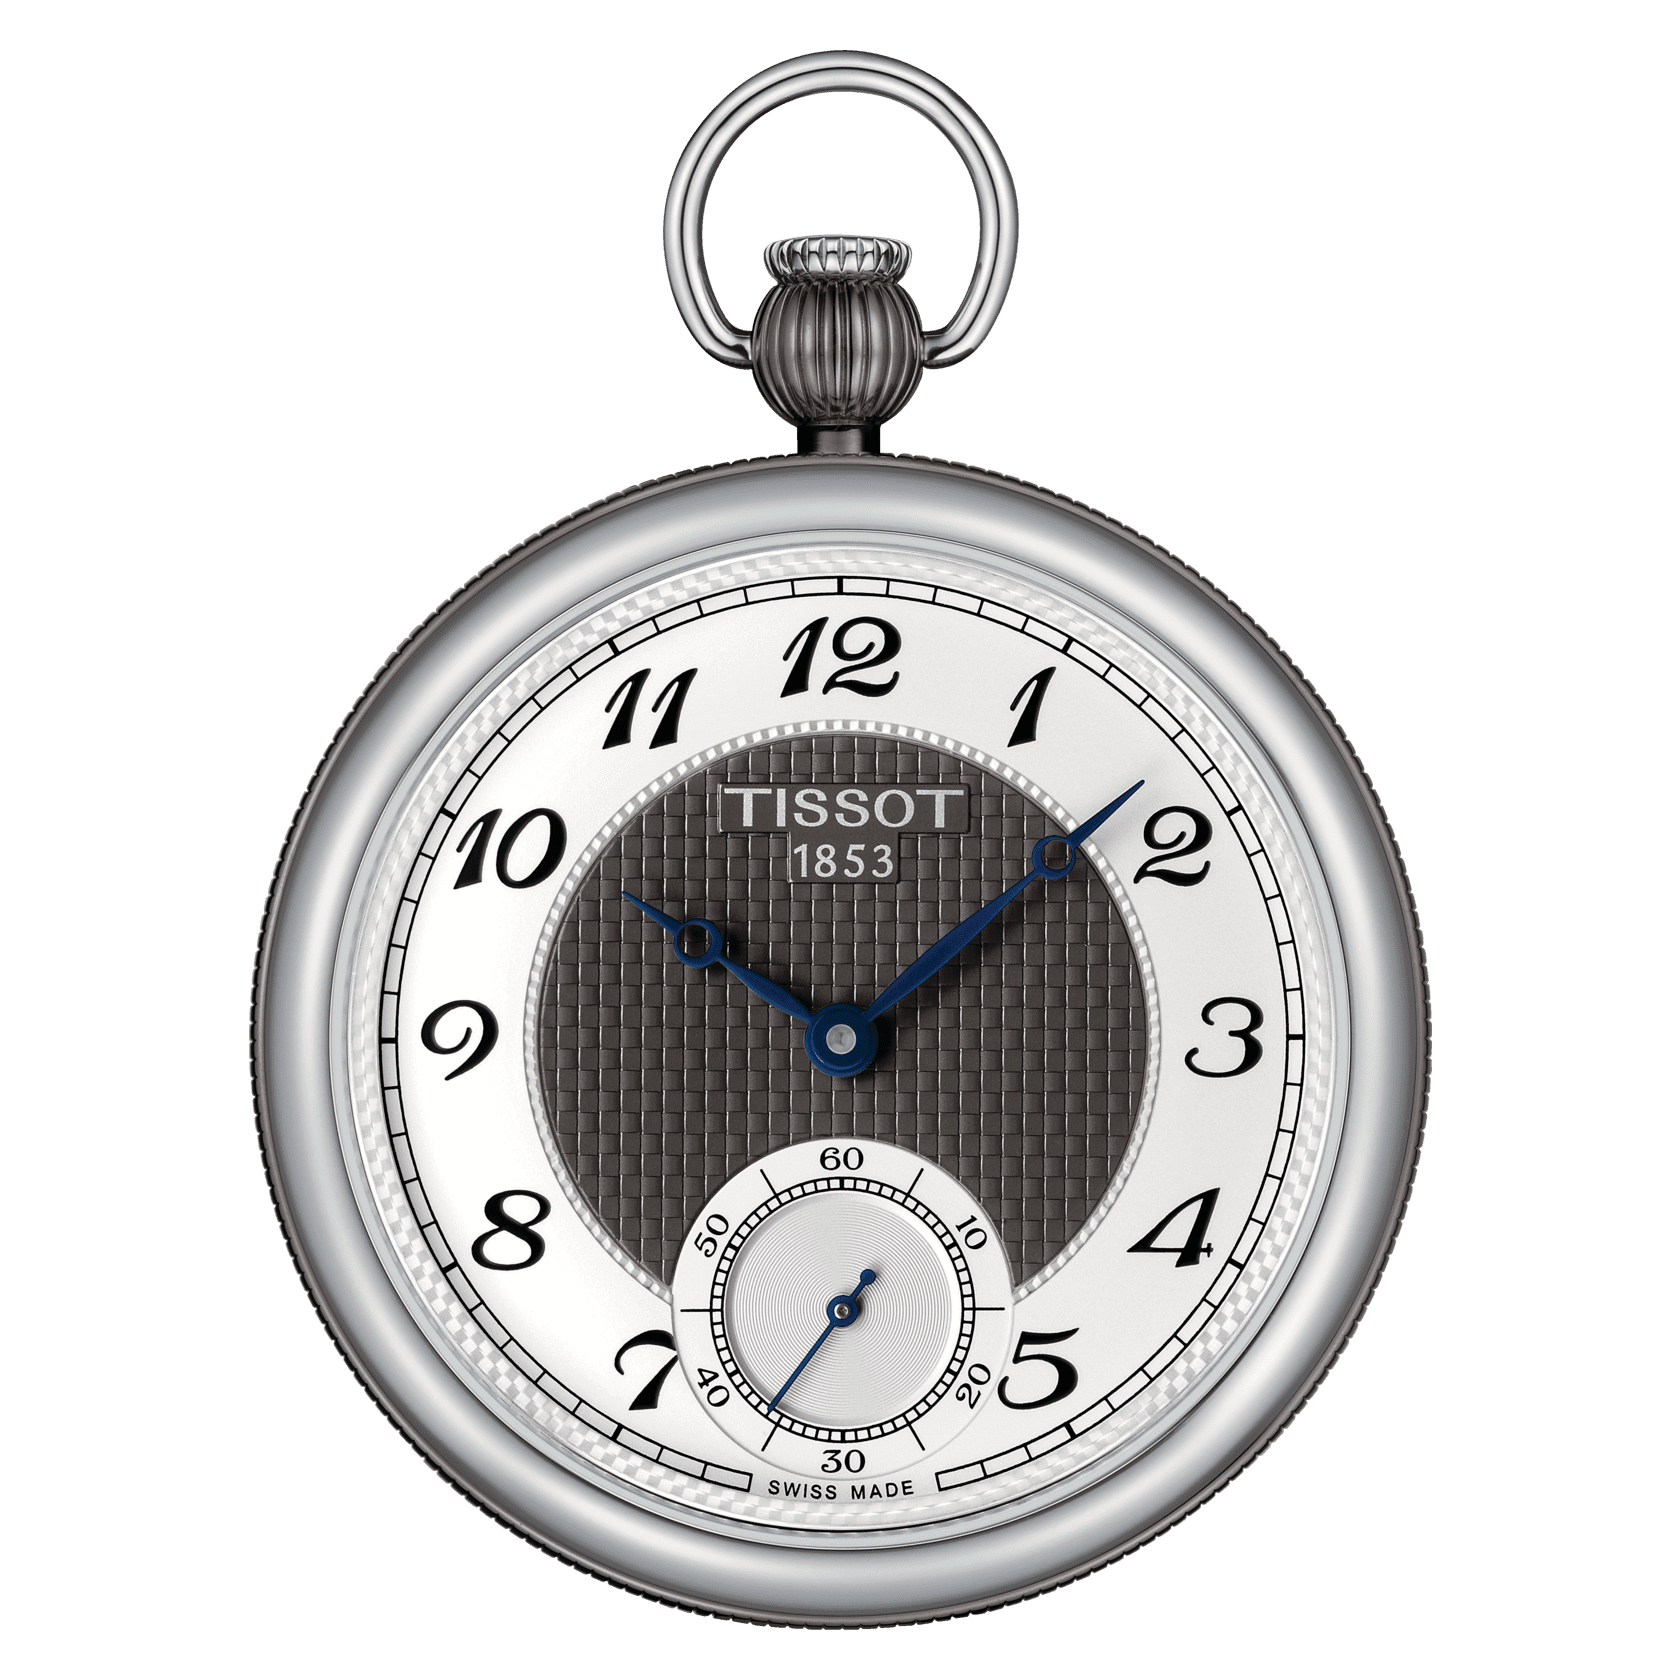 Replica Parmigiani Fleurier Watches